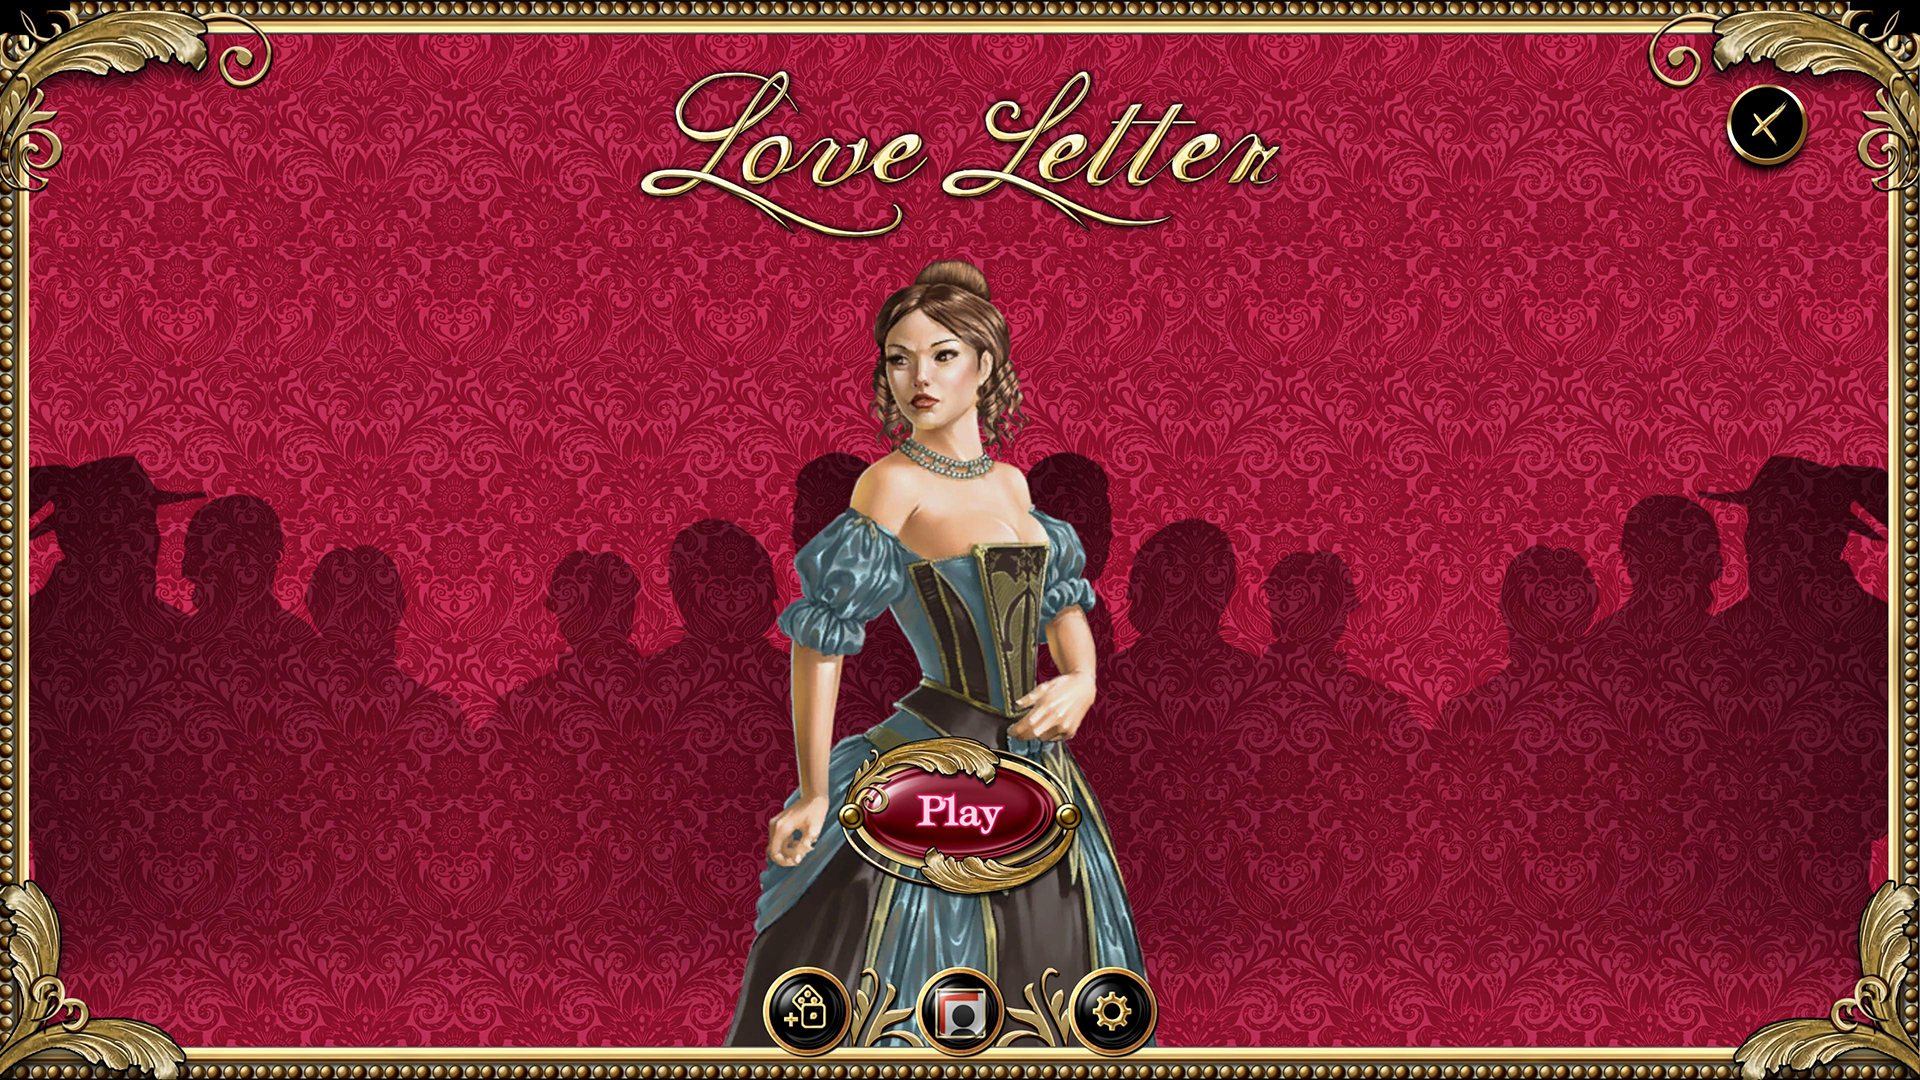 Love Letter Steam CD Key 0.26 usd